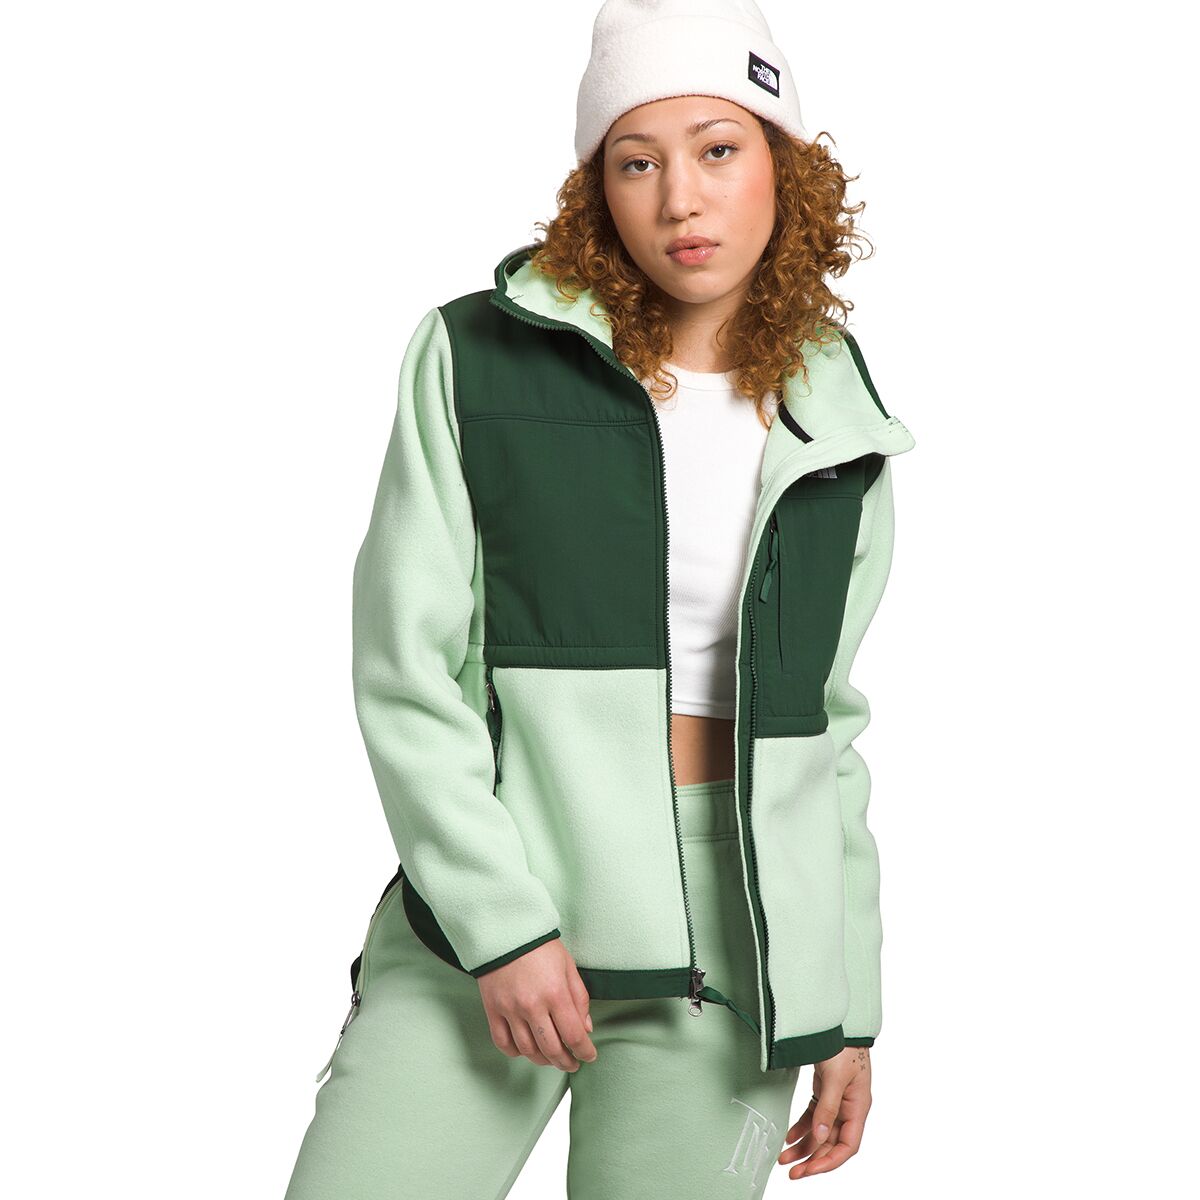 Denali 2 Hooded Fleece Jacket - Women